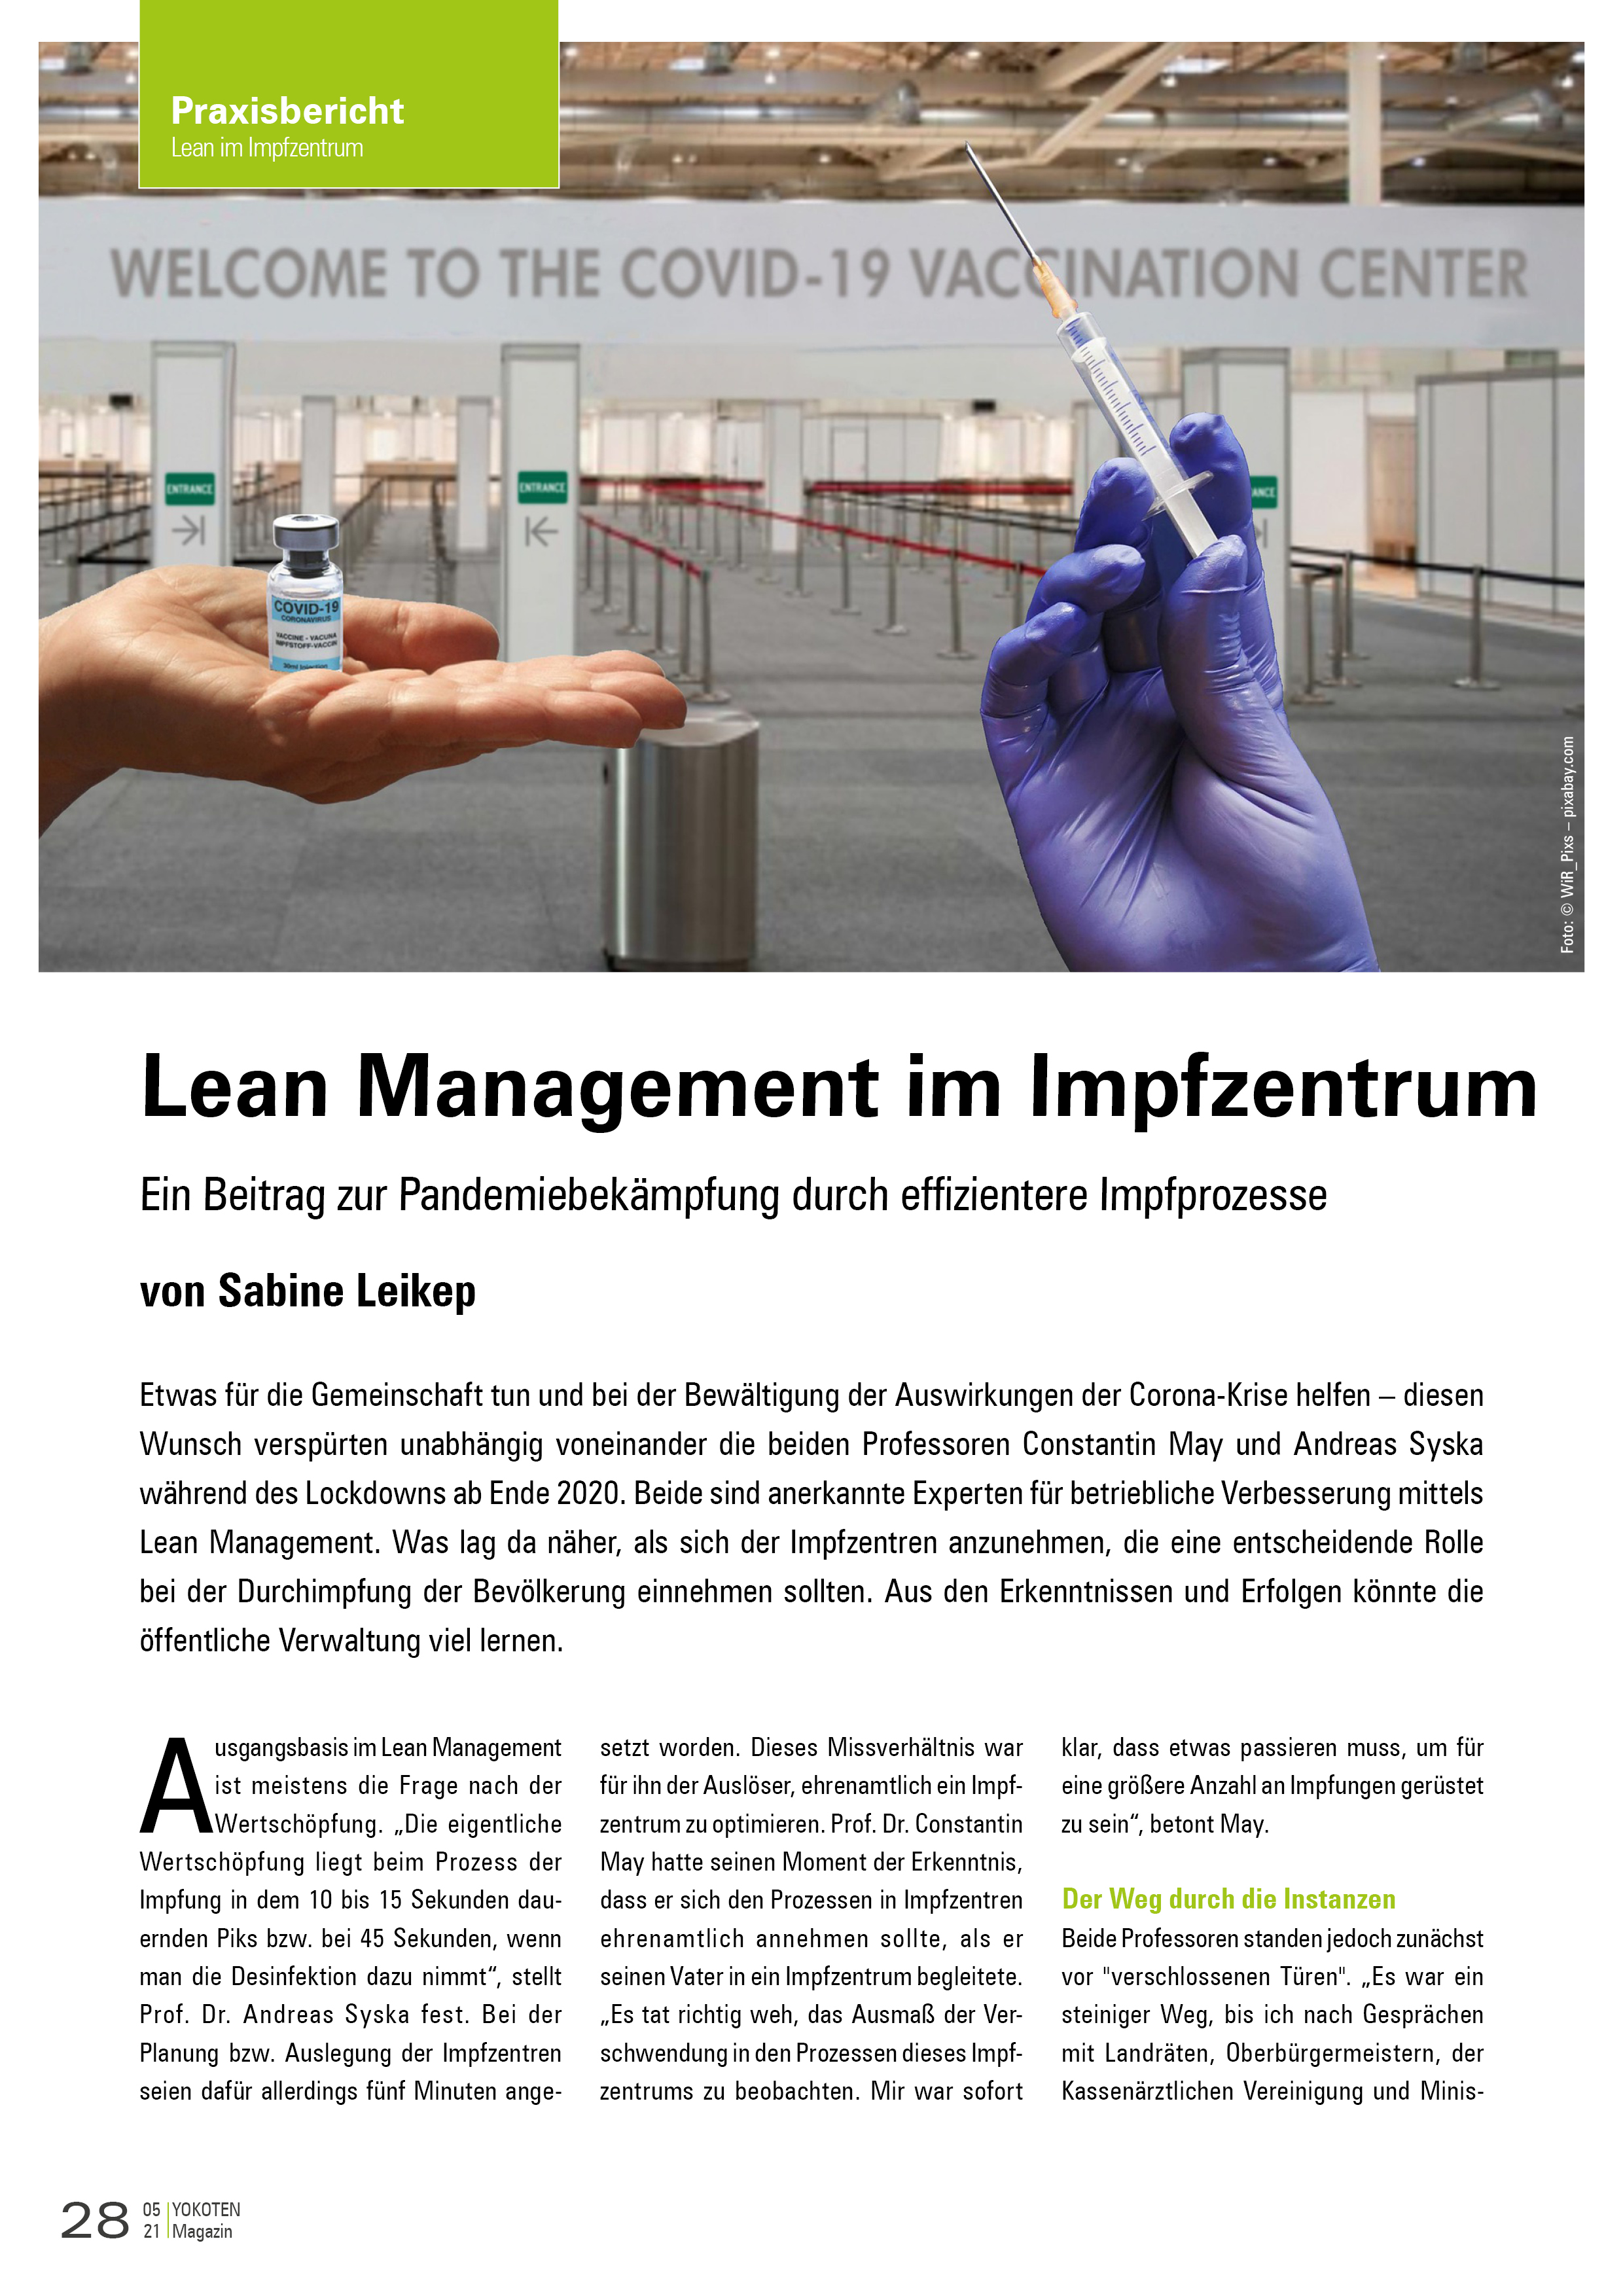 Lean Management im Impfzentrum - Artikel aus Fachmagazin YOKOTEN 2021-05